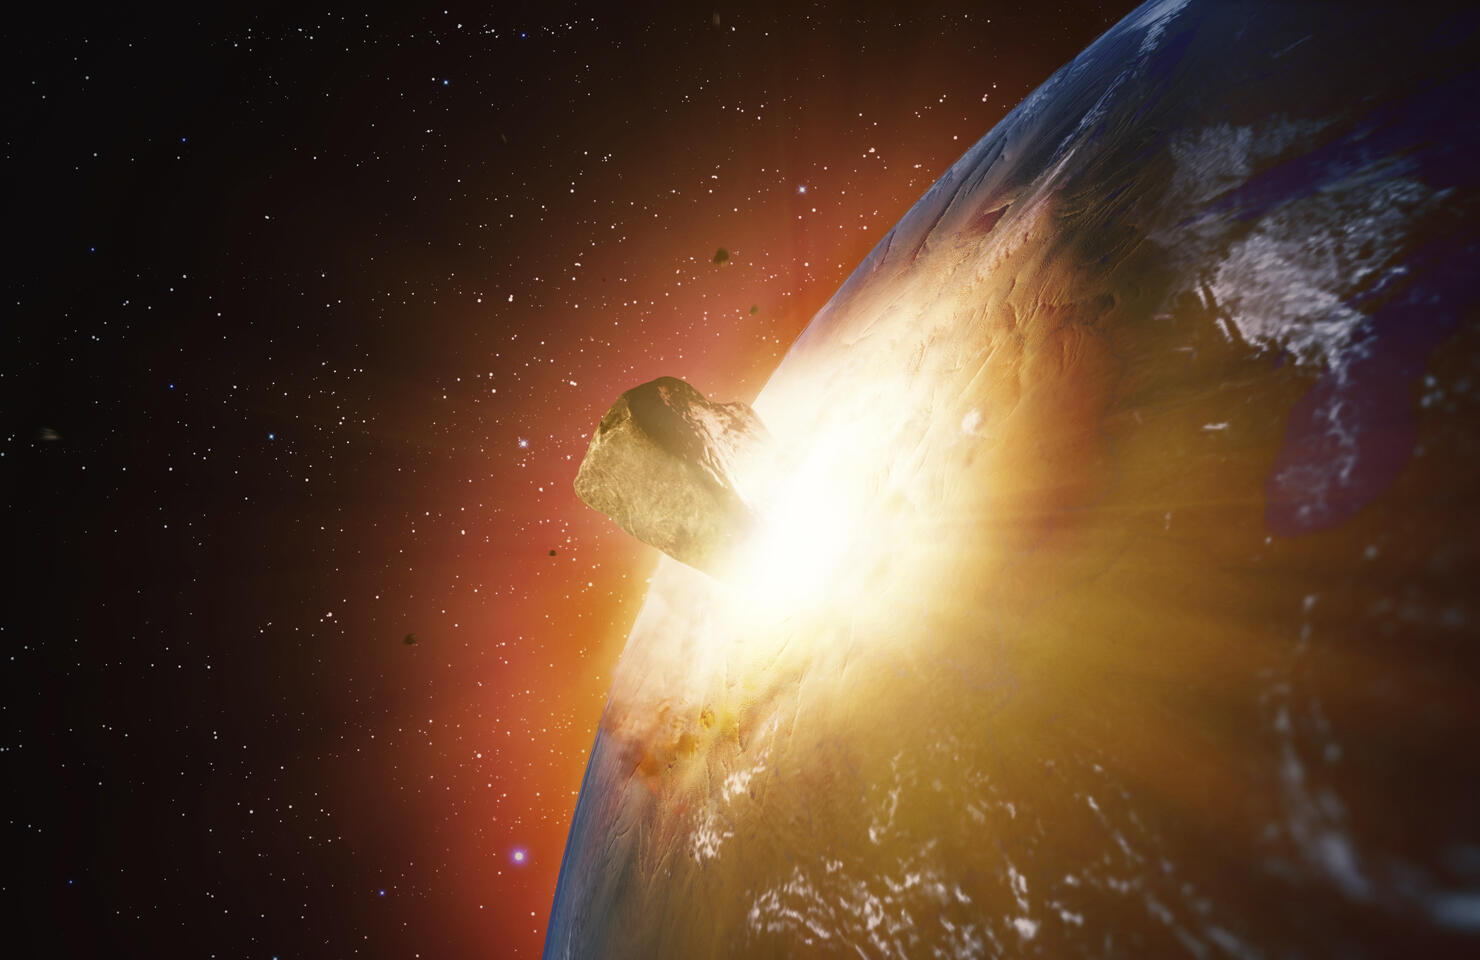 Huge asteroid impacting Earth, illustration